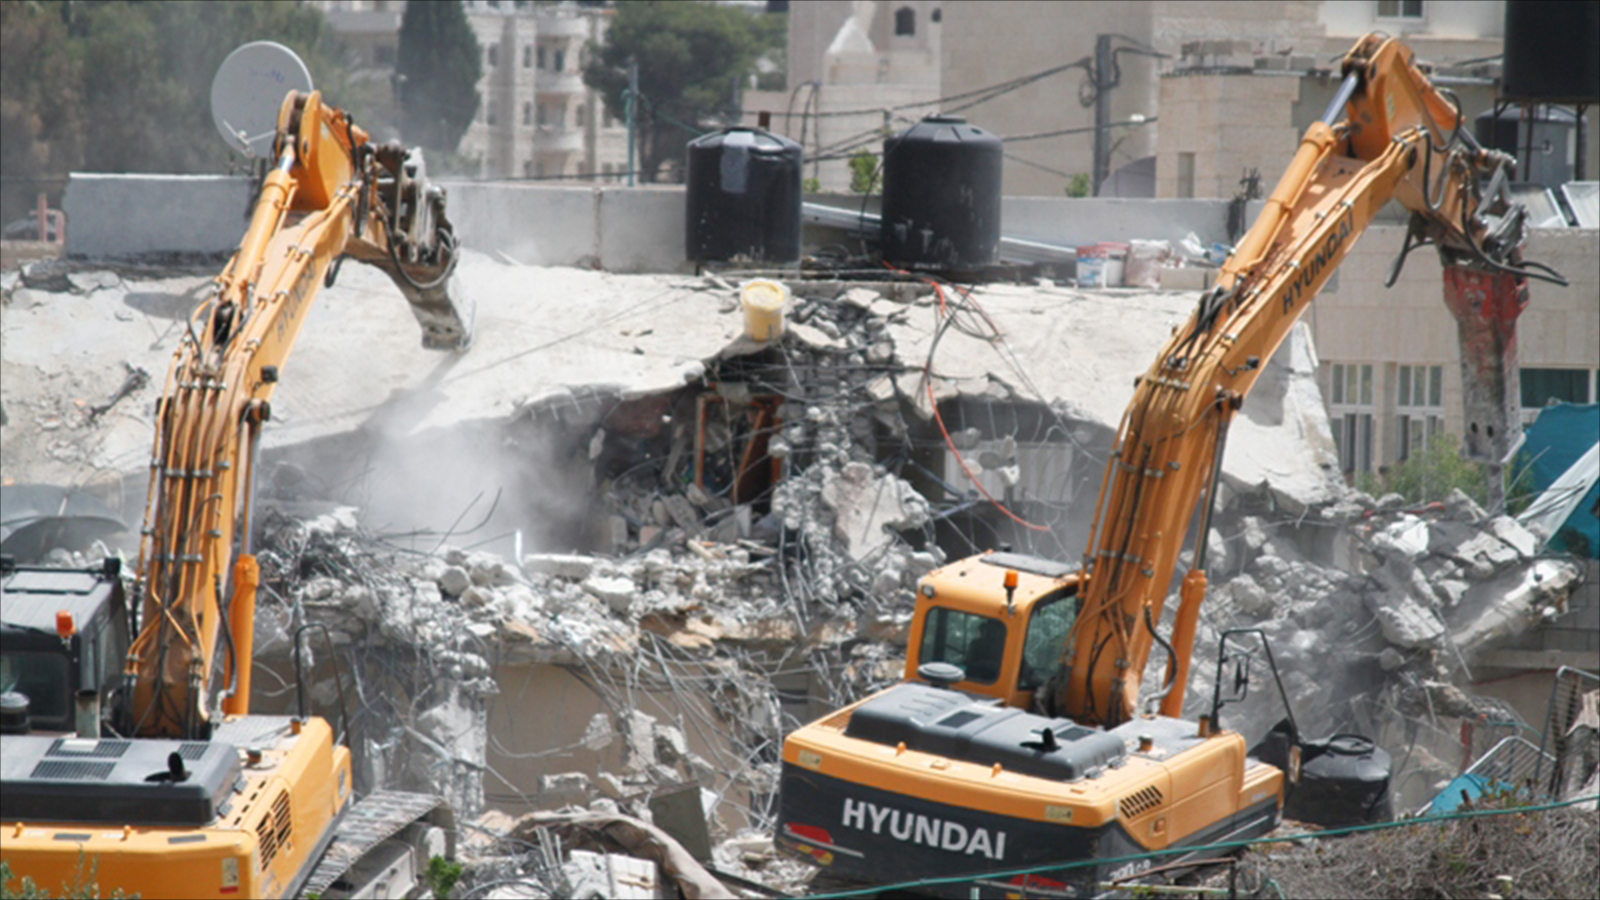 ‪آليات الاحتلال خلال هدمها منزلين في القدس بحجة البناء دون ترخيص‬ (الجزيرة-أرشيف)